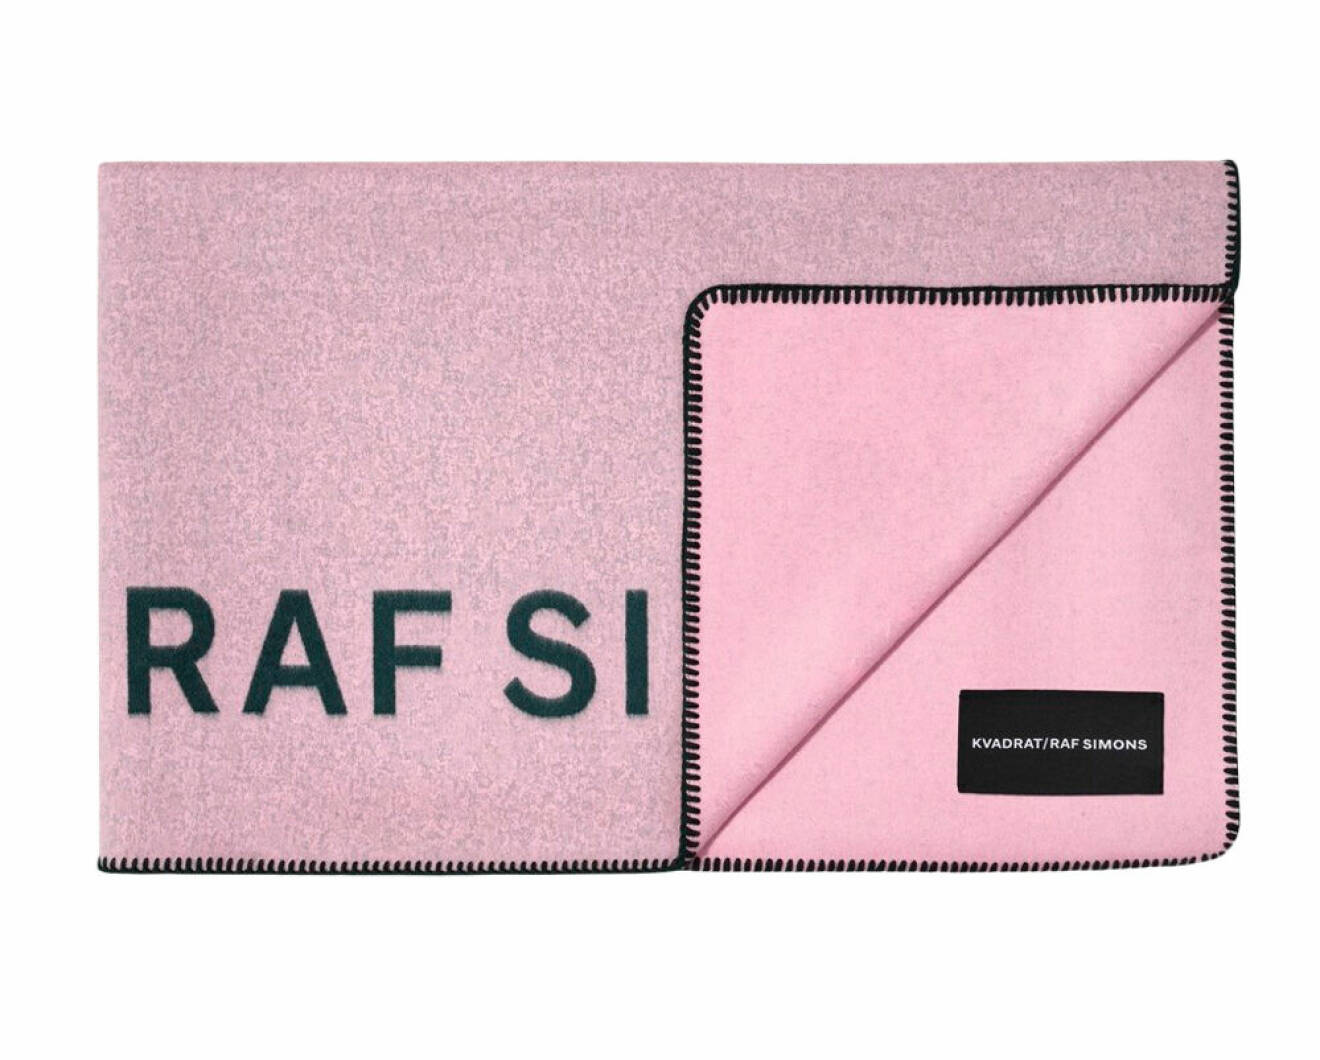 Rosa filt av designern Raf Simons, 19 497  kr, Kvadrat.